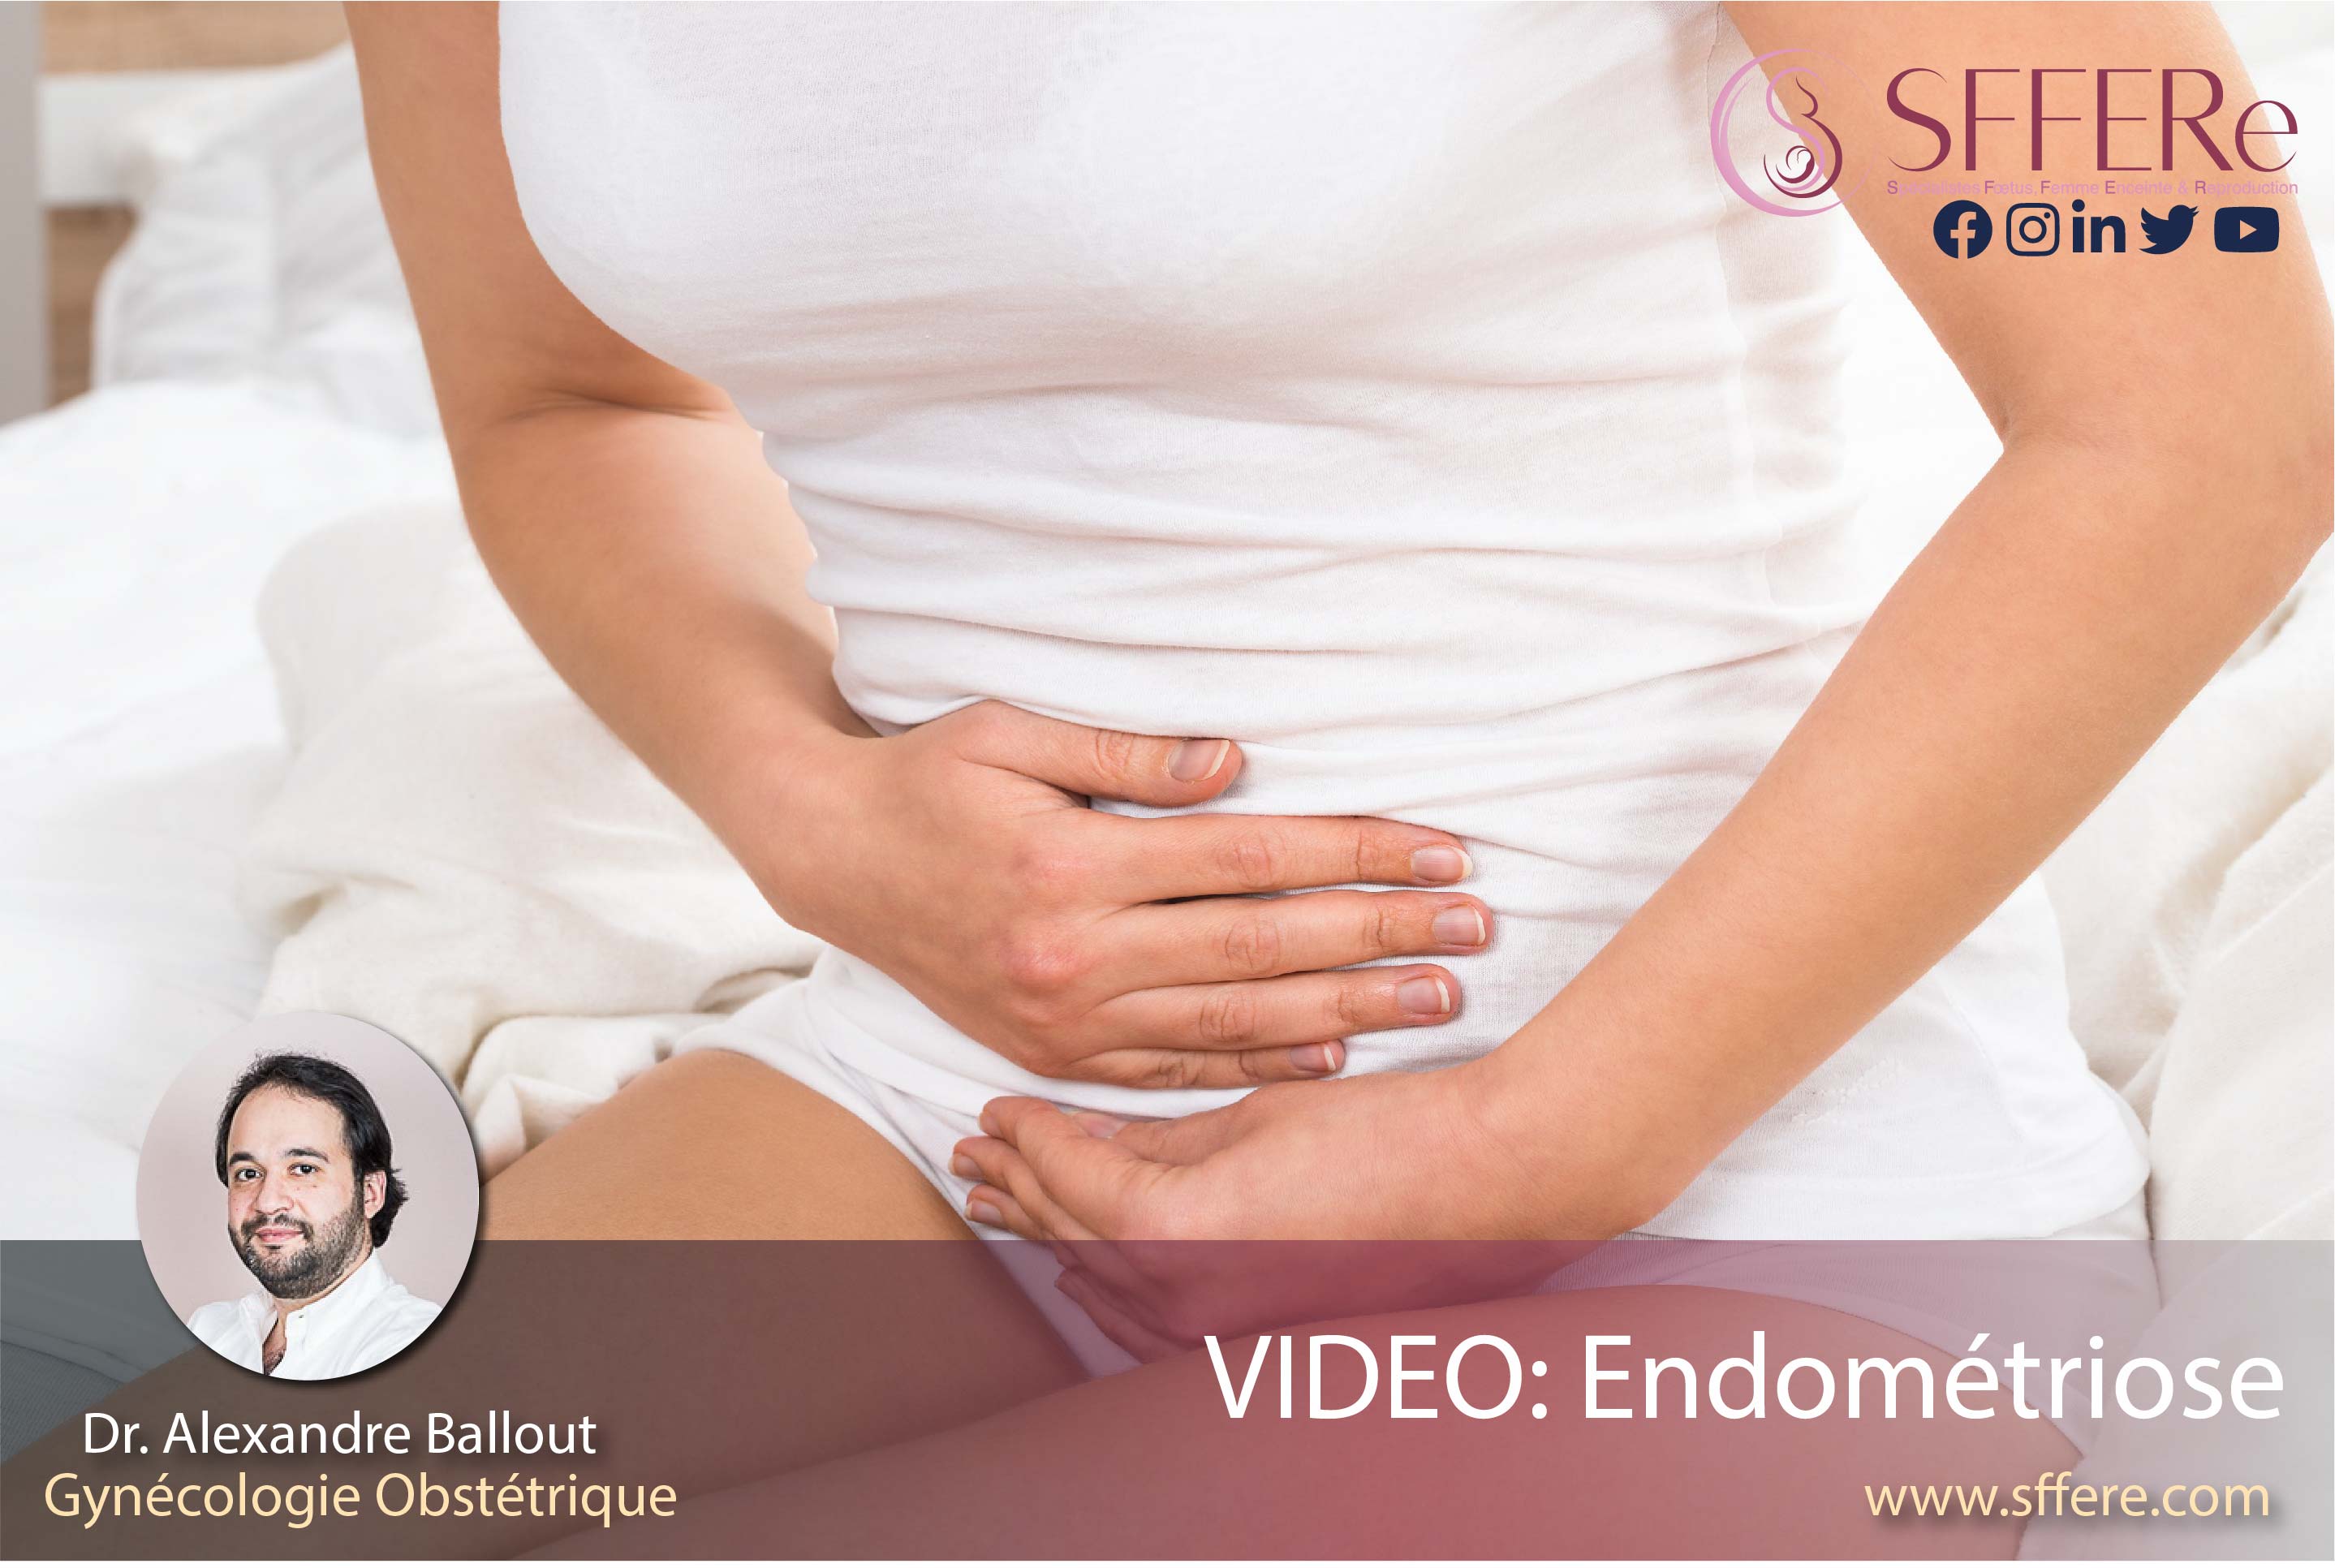 Video: Endométriose